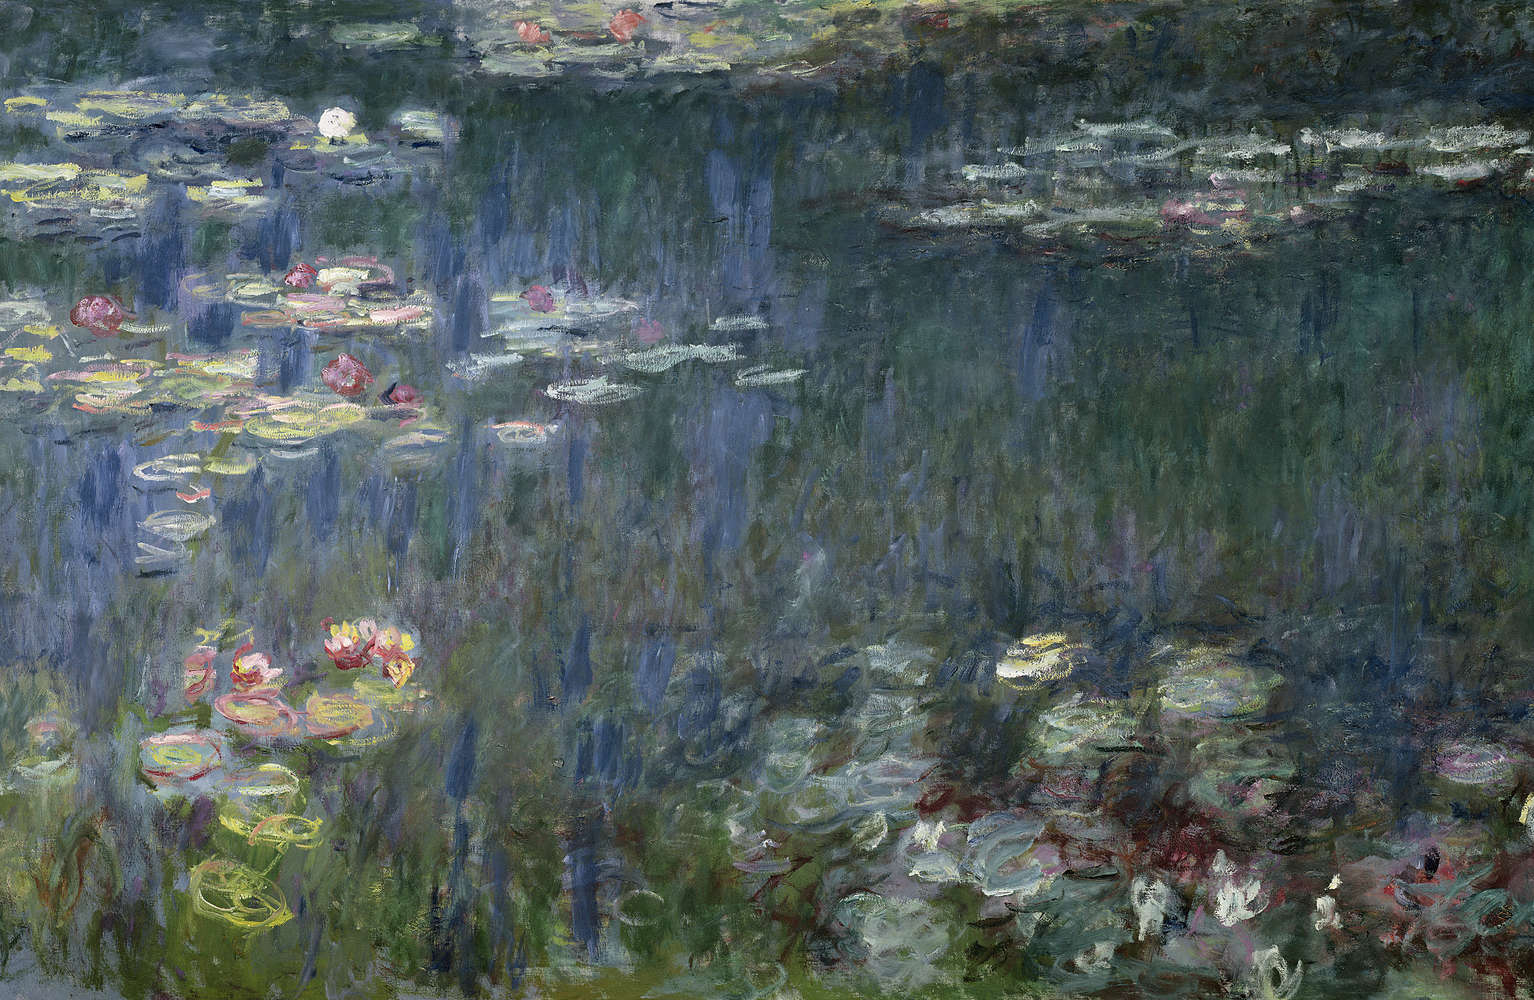             Papier peint "Nymphéas : reflets verts" de Claude Monet
        